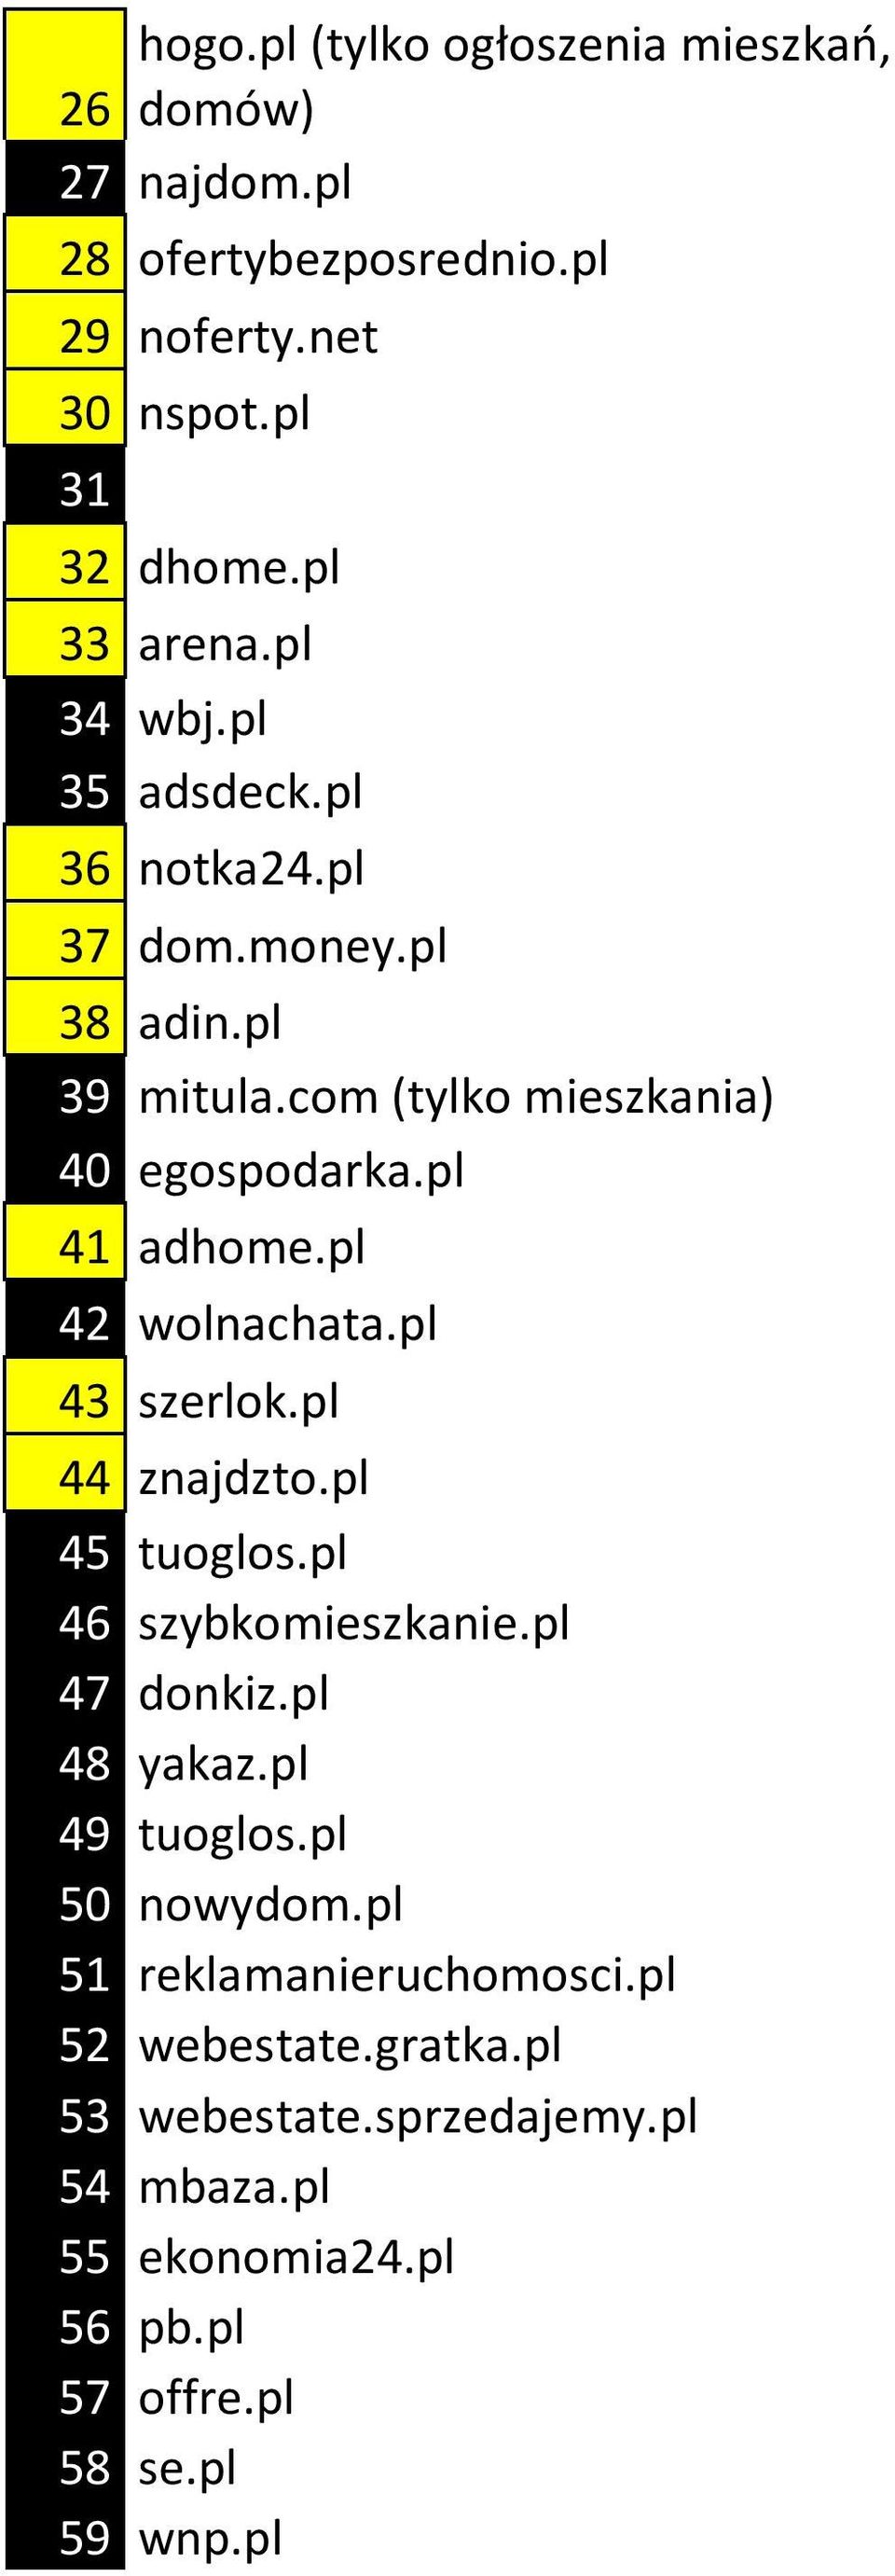 pl 42 wolnachata.pl 43 szerlok.pl 44 znajdzto.pl 45 tuoglos.pl 46 szybkomieszkanie.pl 47 donkiz.pl 48 yakaz.pl 49 tuoglos.pl 50 nowydom.